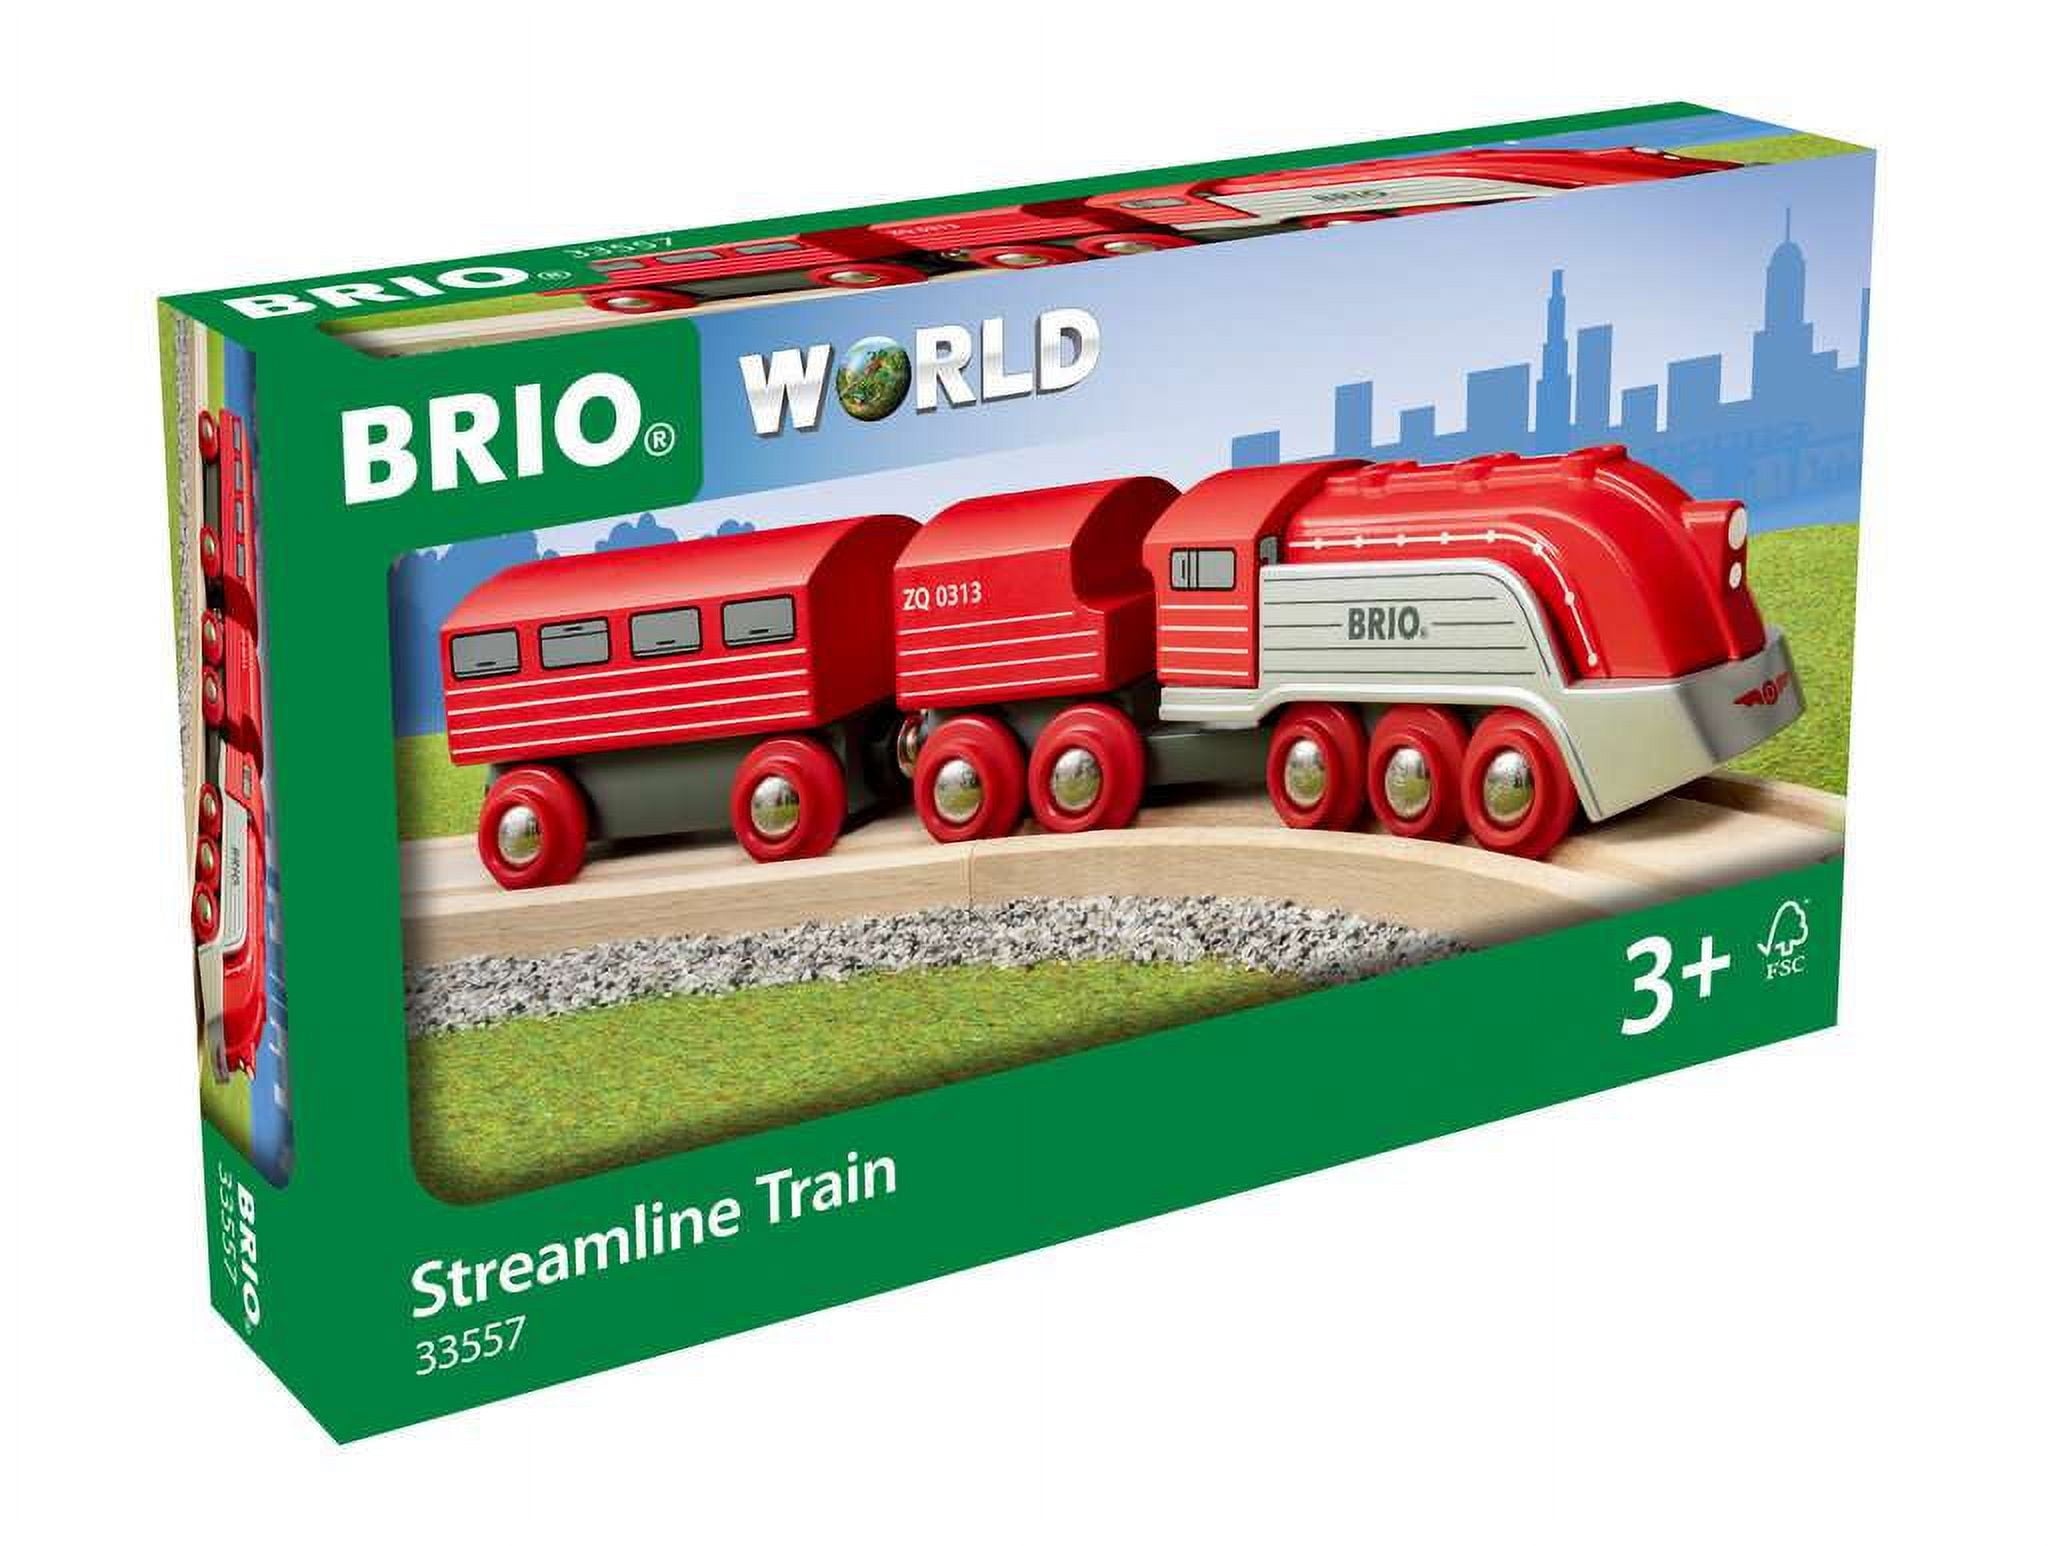 BRIO Streamline Train BRIO World Train 